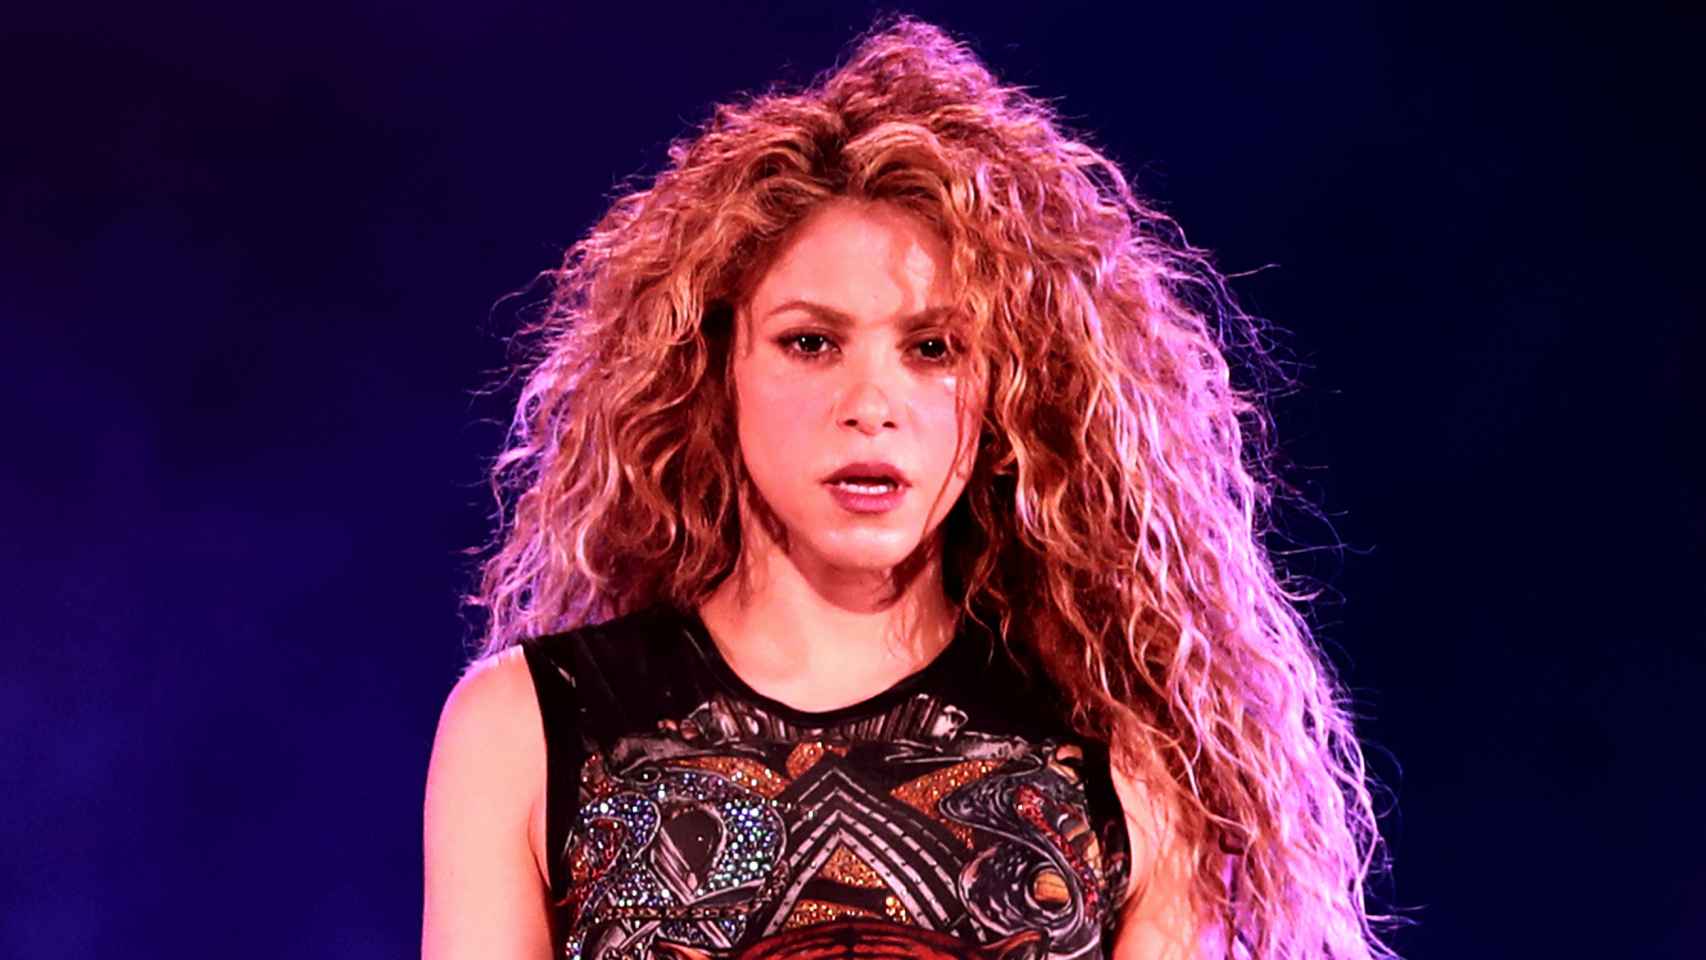 Imágenes del día: el impactante cambio de 'look' de Shakira que ha revolucionado a sus fans